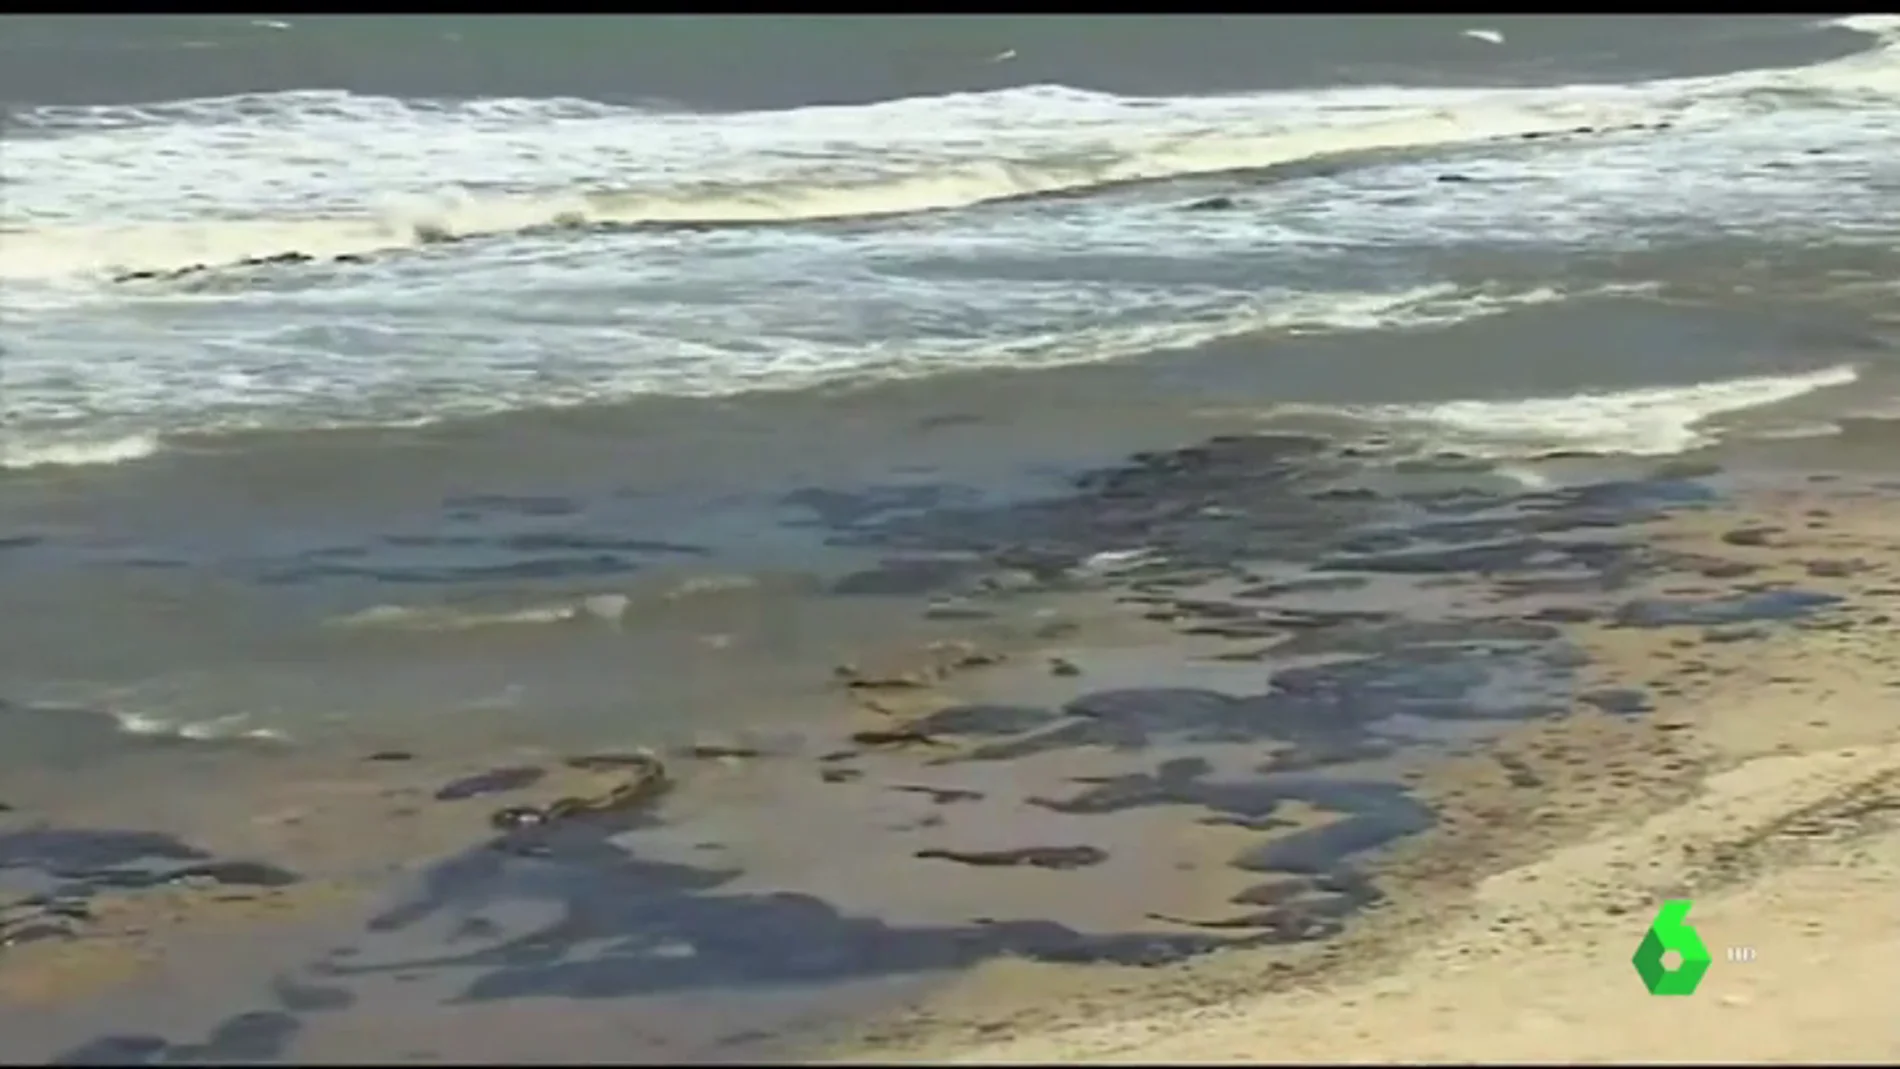 Recogen más de 4.000 toneladas de petróleo en las costas brasileñas 